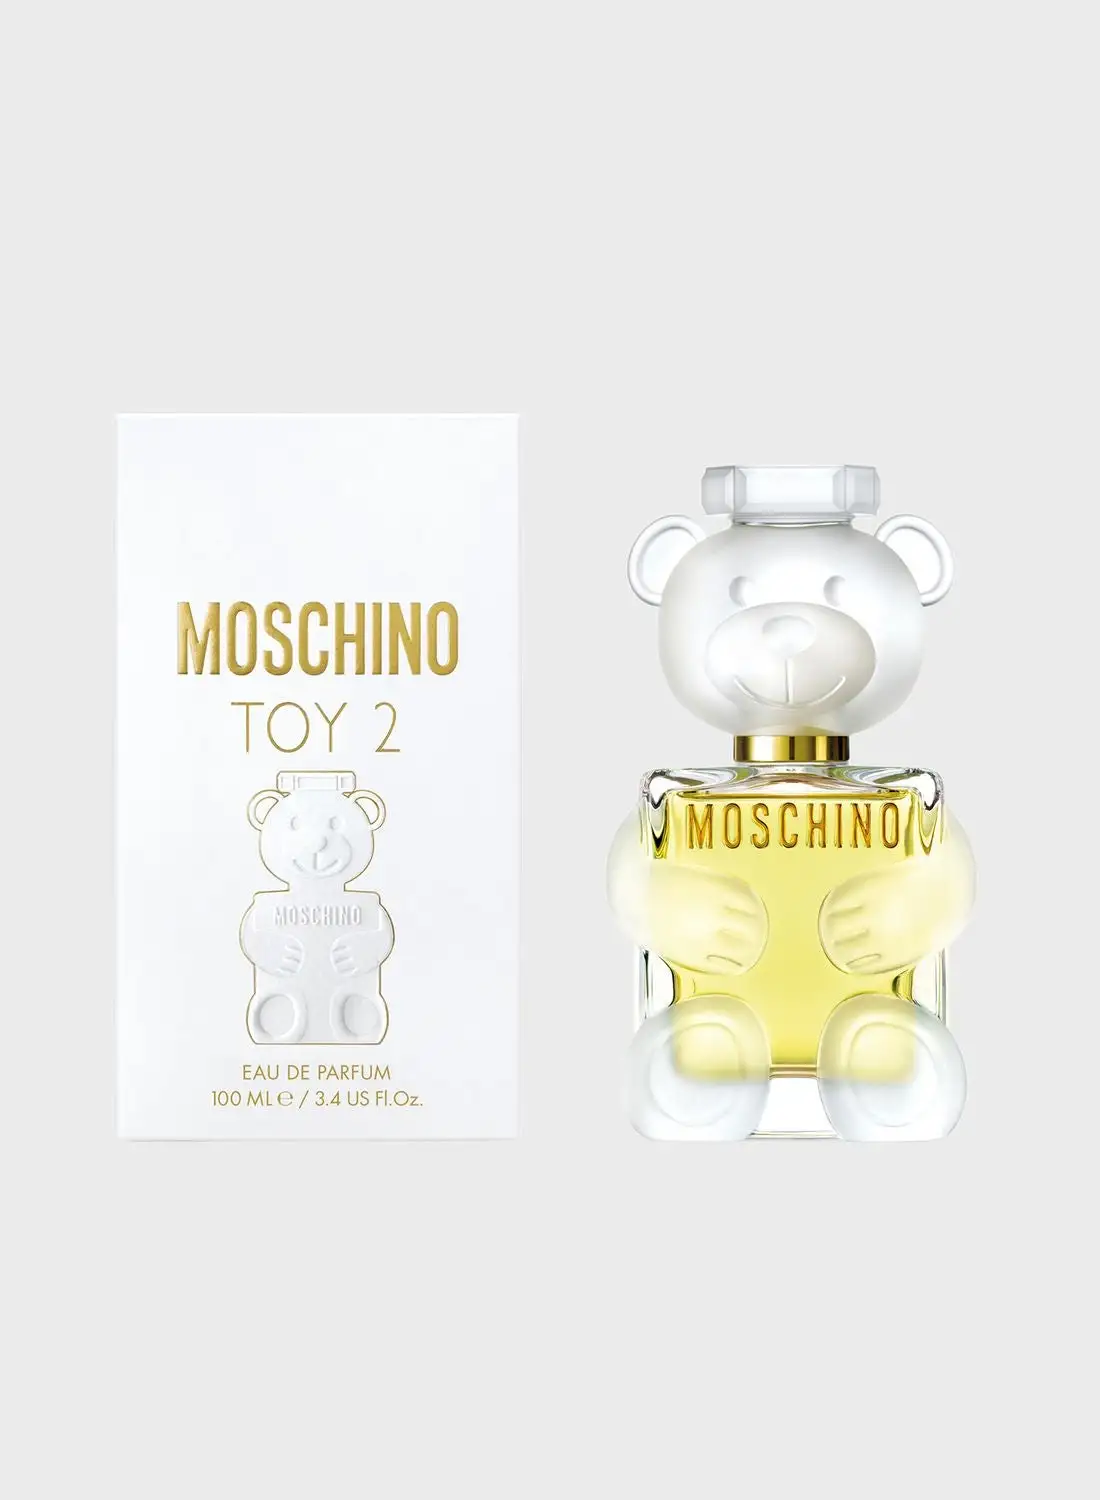 MOSCHINO Toy2 Eau De Parfum 100 Ml